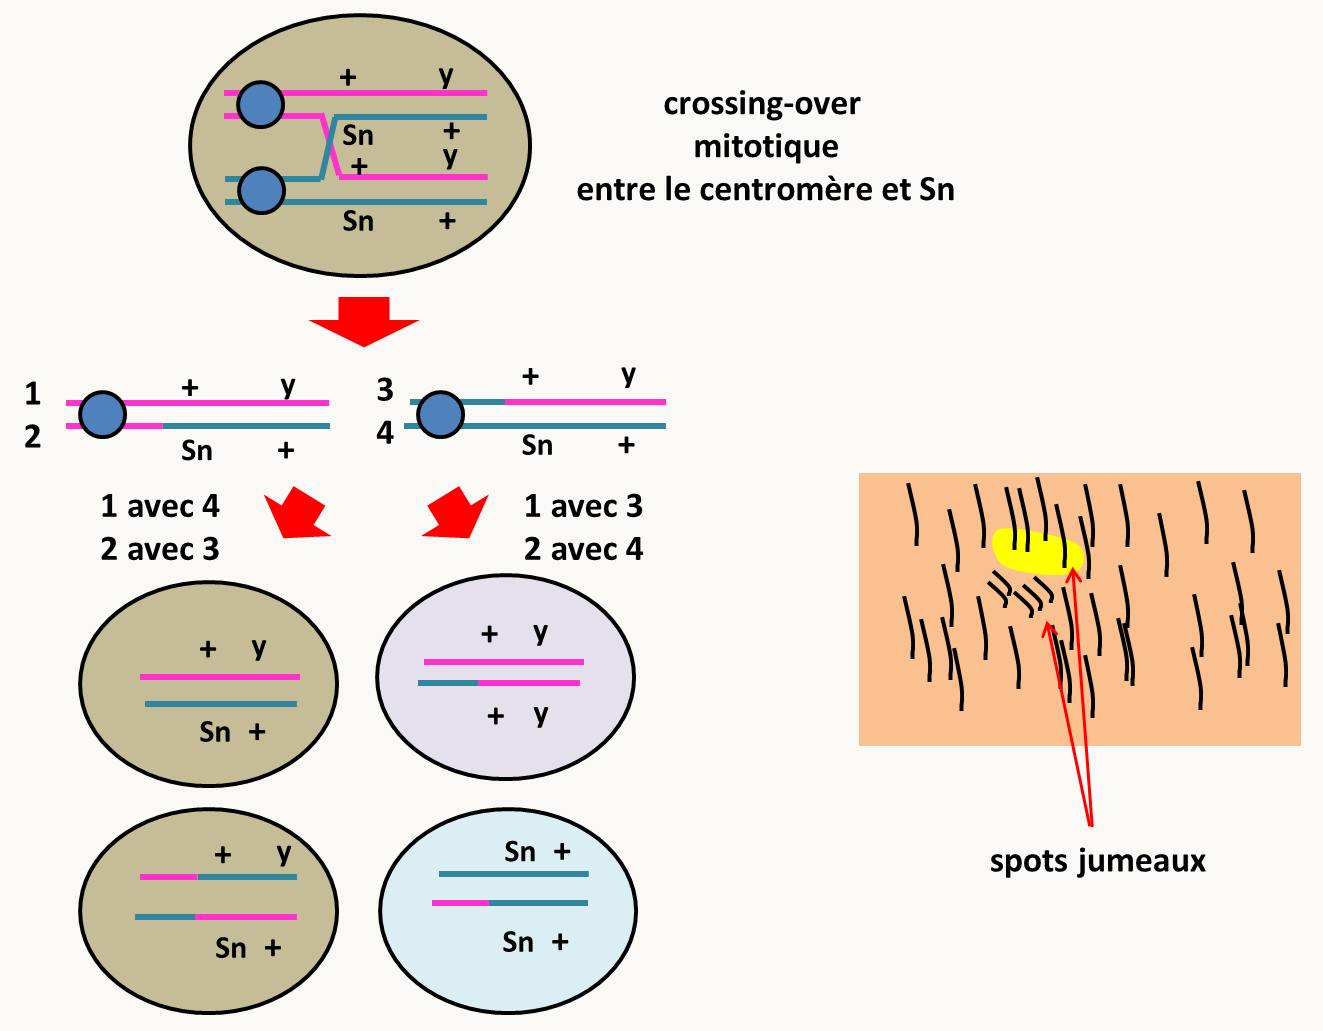 effets des crossing-over mitotiques. Après un crossing-over entre le gène Sn et le centromère, dans le cas de gauche avec ségrégation de la chromatide 1 avec la chromatide 4 et donc de la chromatide 2 avec la chromatide 3, deux cellules sauvages sont obtenues. Au contraire, dans le cas de droite, où la chromatide 1 ségrège avec la chromatide 3 et donc de la chromatide 2 avec la chromatide 4, les cellules filles seront pour l'une homozygote pour Sn et l'autre homozygote pour y. Chacune va donner naissance à un clone ce qui va aboutir à ce que l'on appelle des clones ou spots jumeaux.